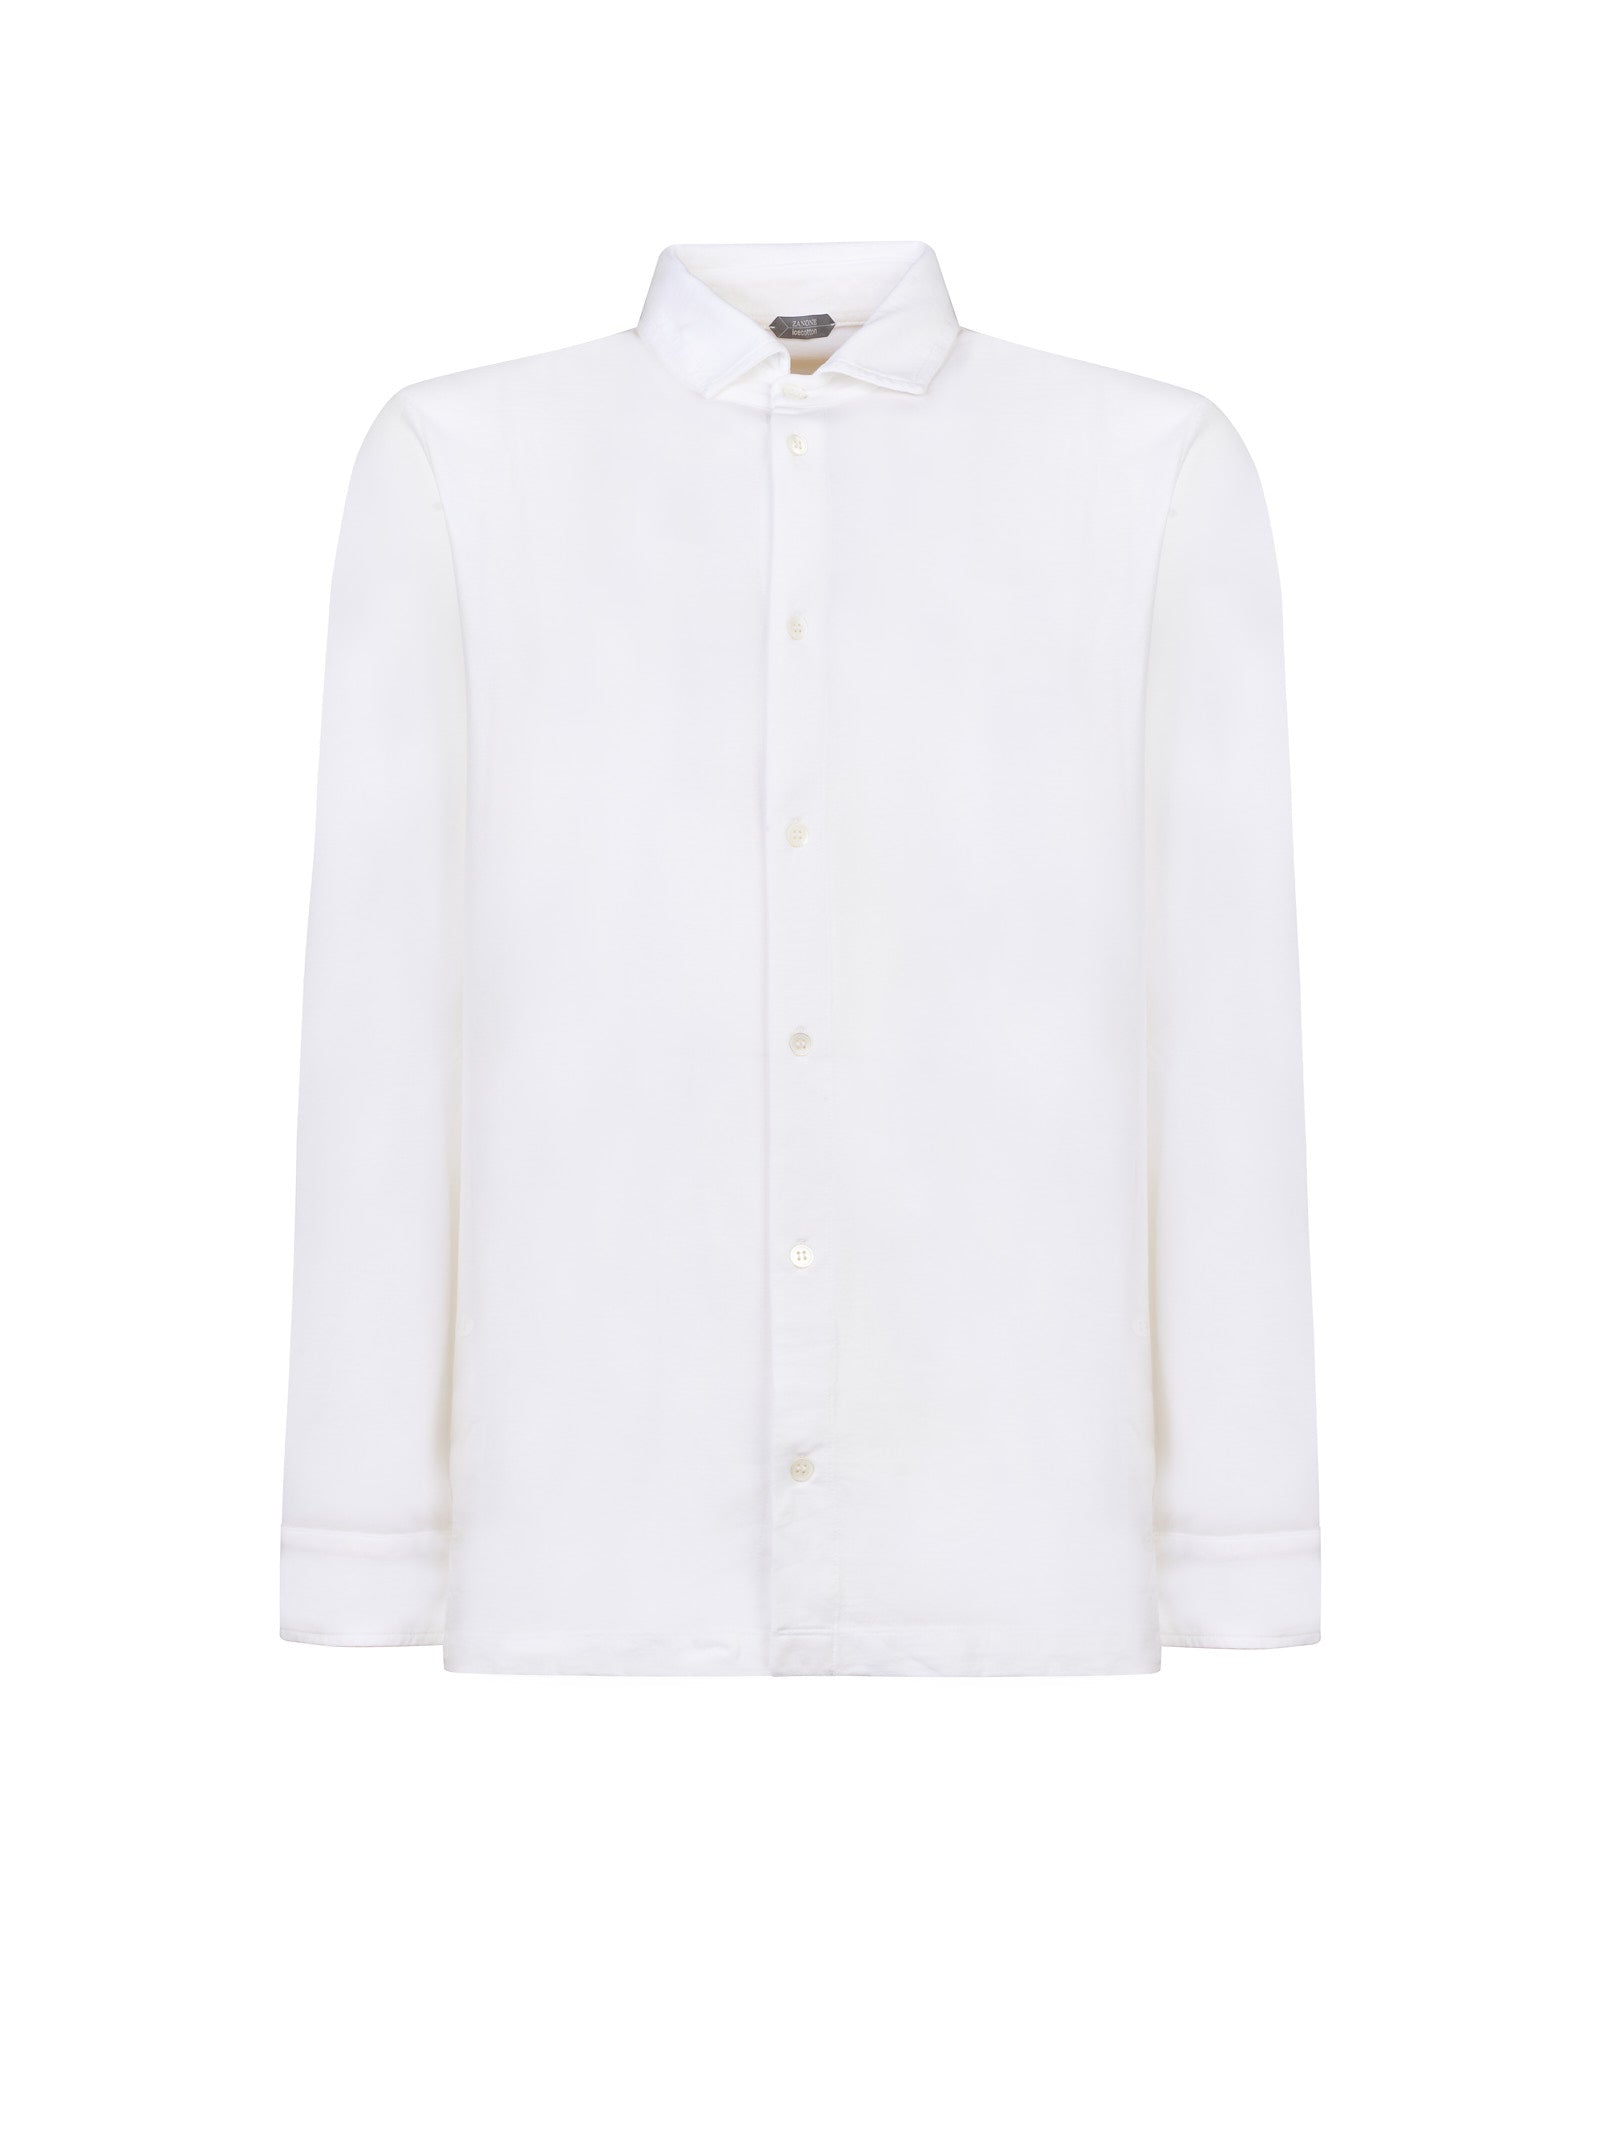 Camicia ZANONE
Bianco